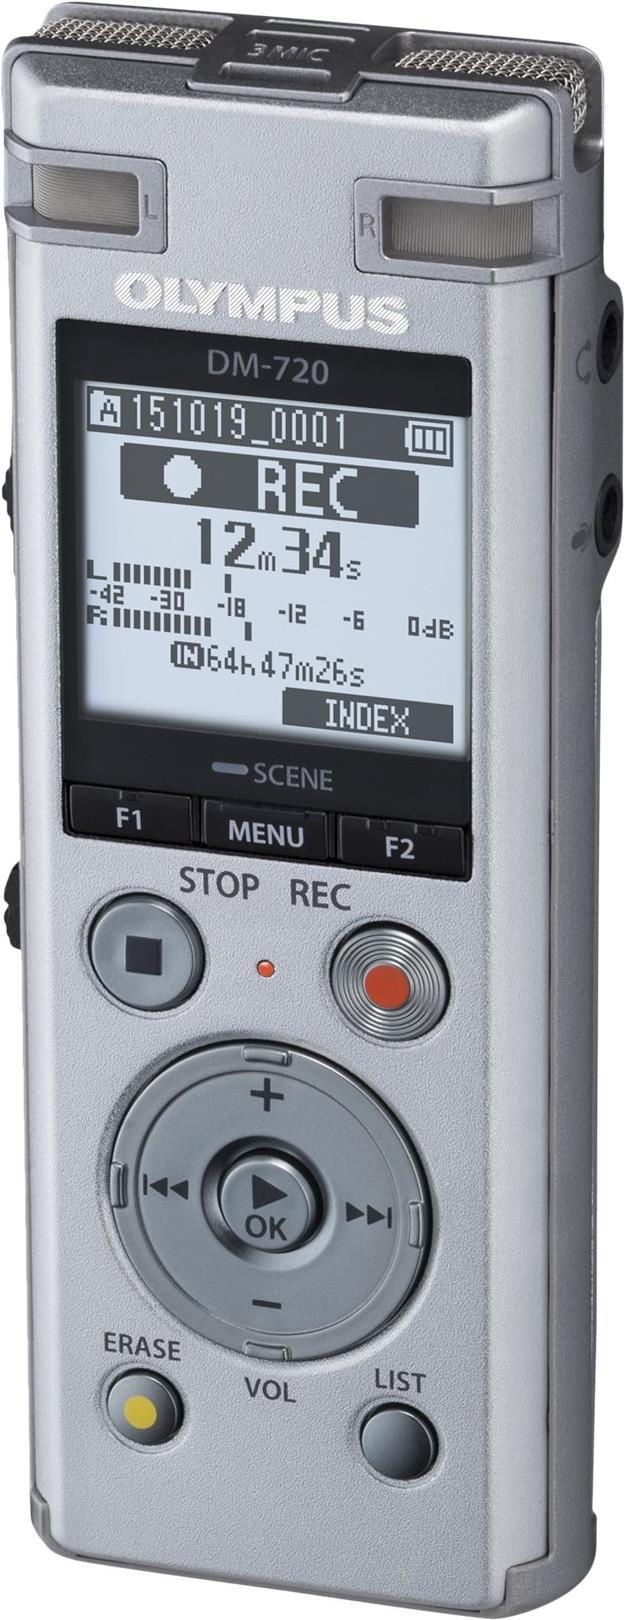 Olympus DM-720 Voicerecorder (V414111SE030)